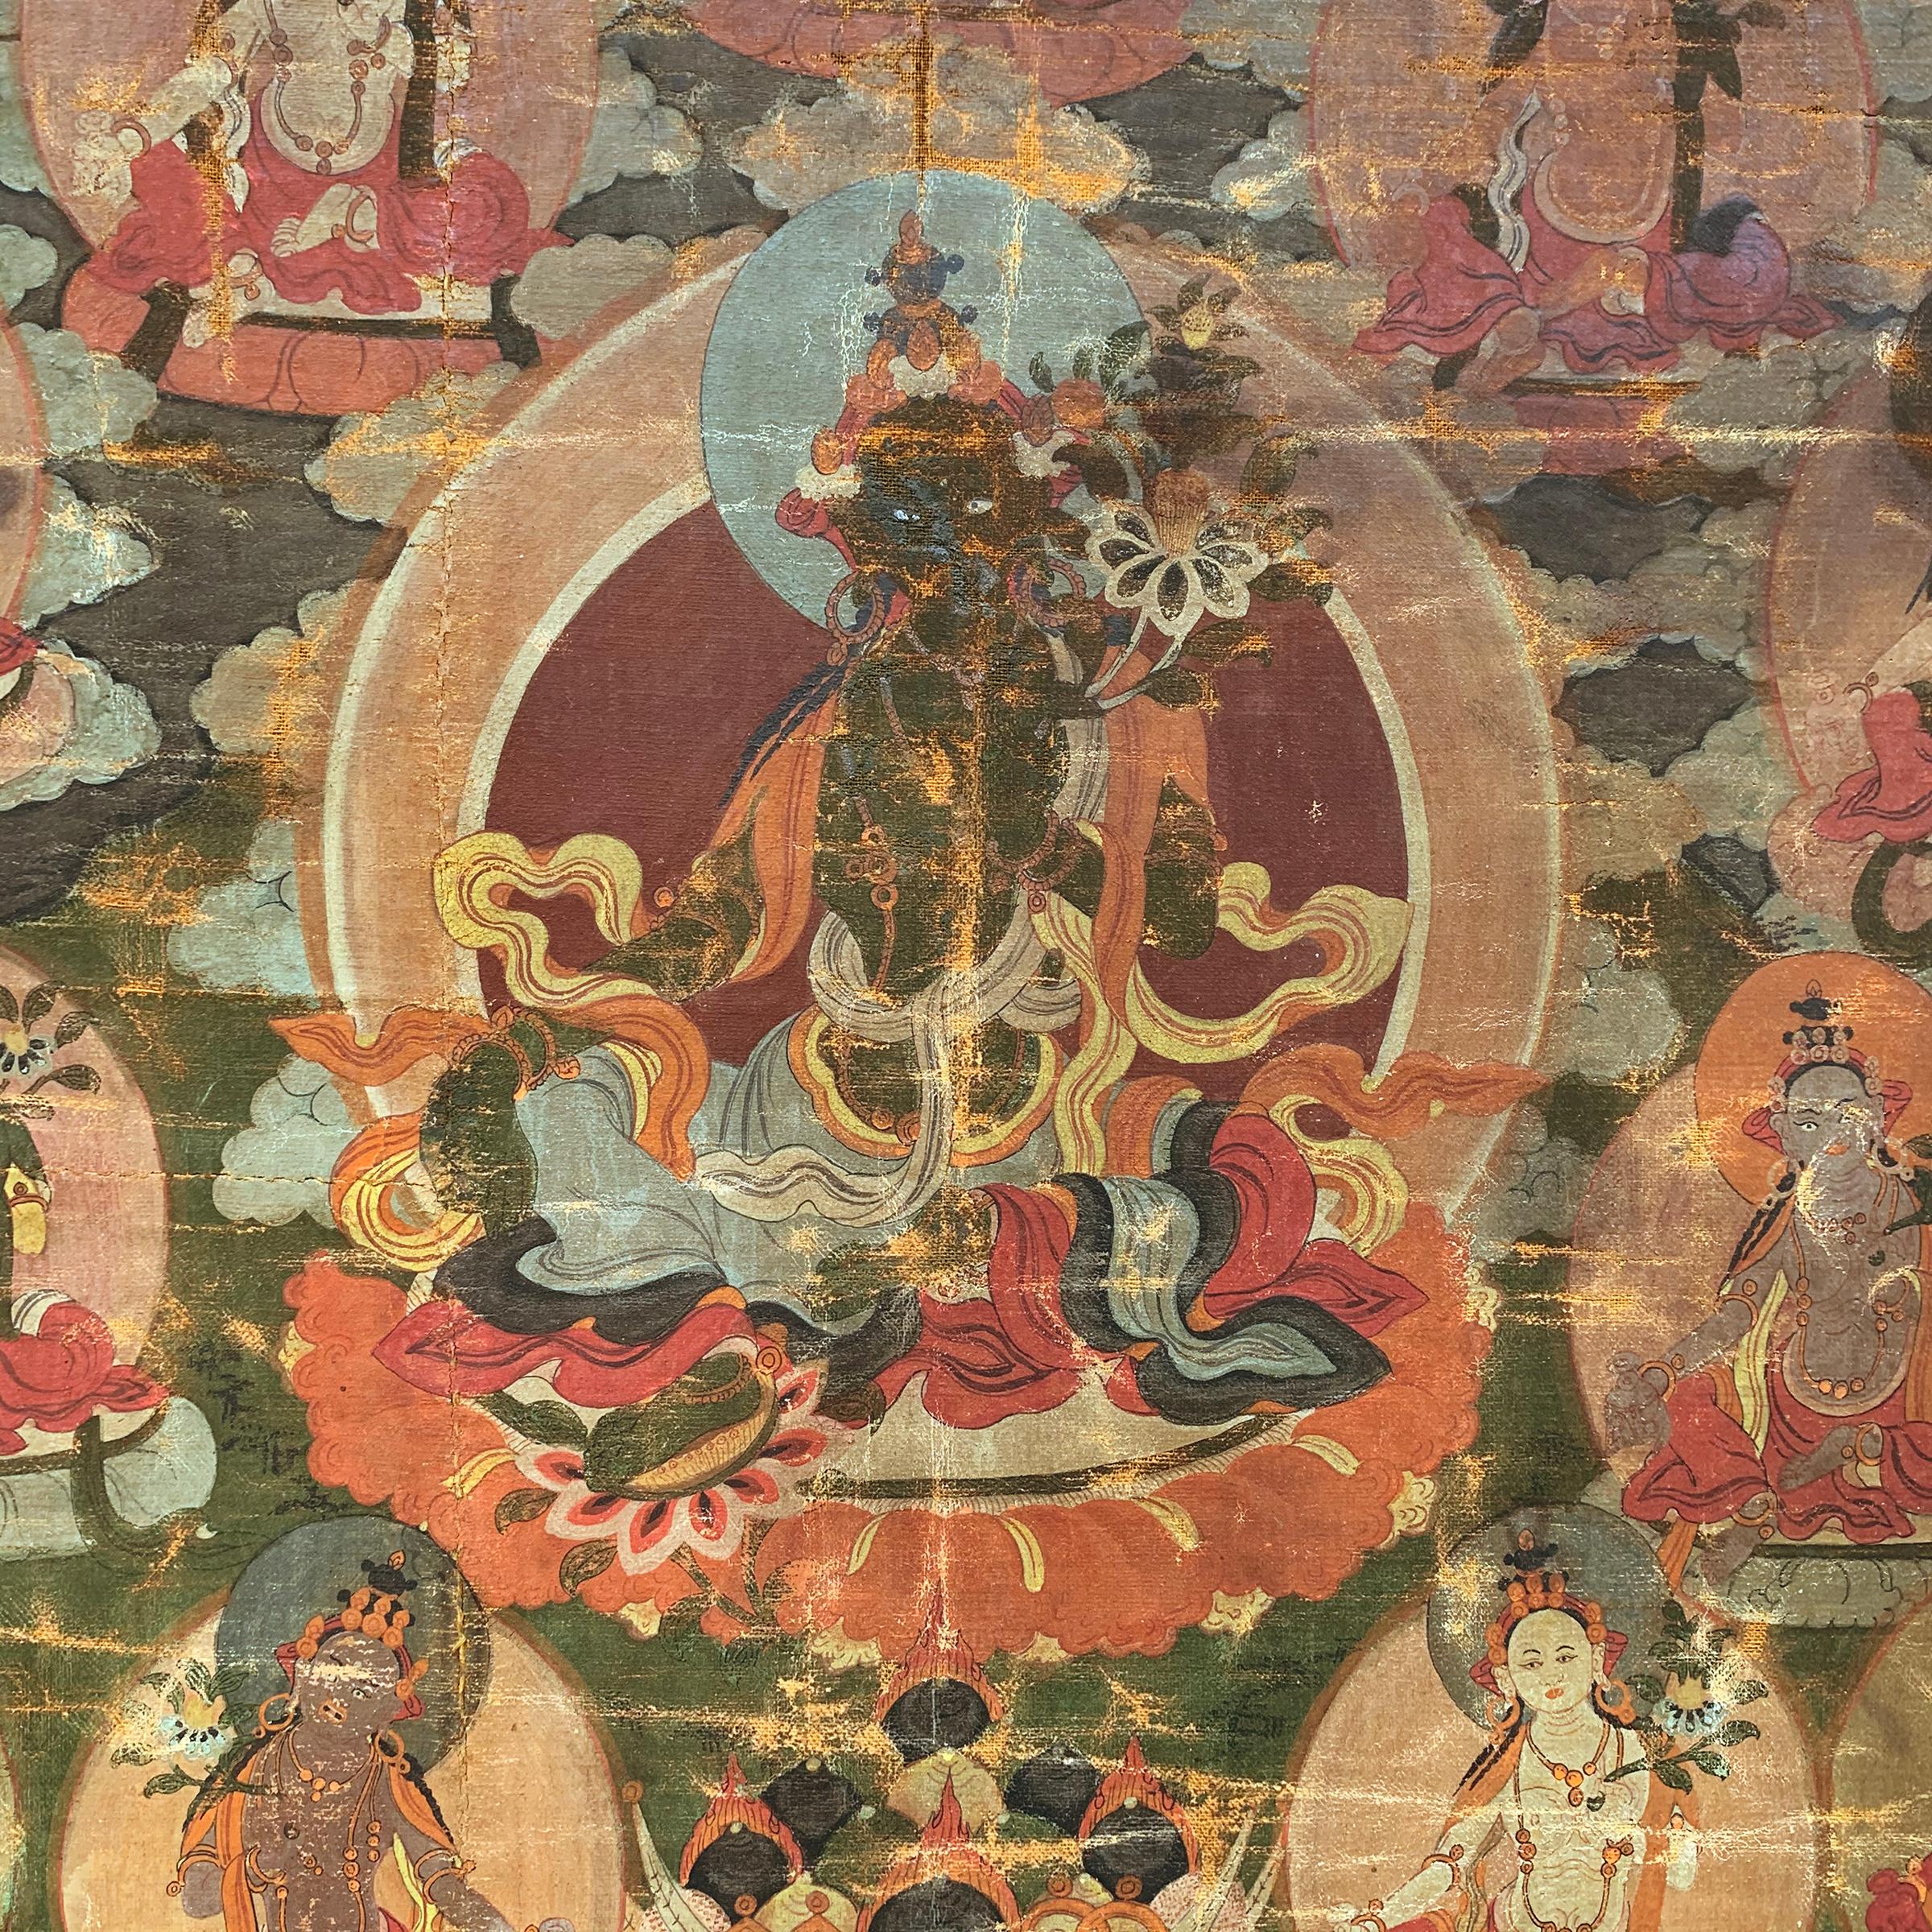 Rare Thangka tibétain du XVIIIe siècle représentant la Tara verte assise sur un trône de lotus, prête à descendre pour offrir réconfort et protection à tous les êtres souffrants. Sa main droite est tendue dans le geste du don et sa main gauche dans